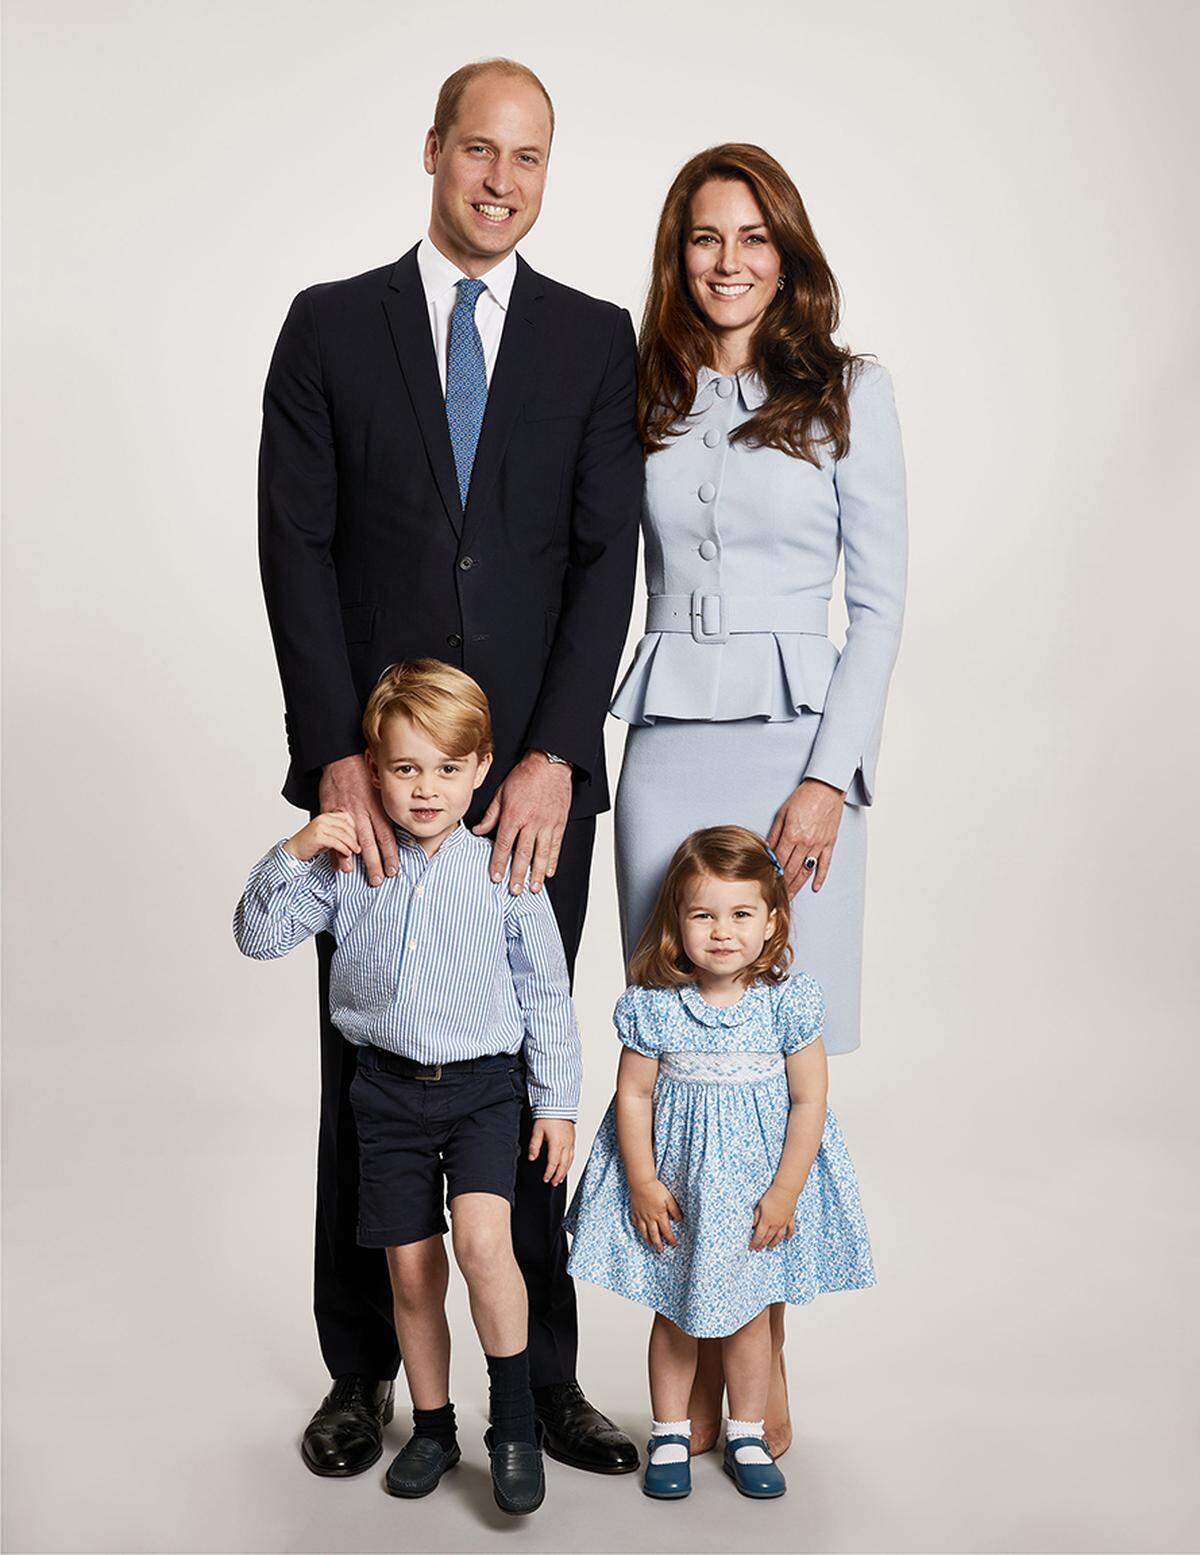 Auch die britische Herzogsfamilie von Cambridge erweitert sich im Frühling um ein Mitglied: Prinz George und Prinzessin Charlotte bekommen im April ein neues Geschwisterchen.